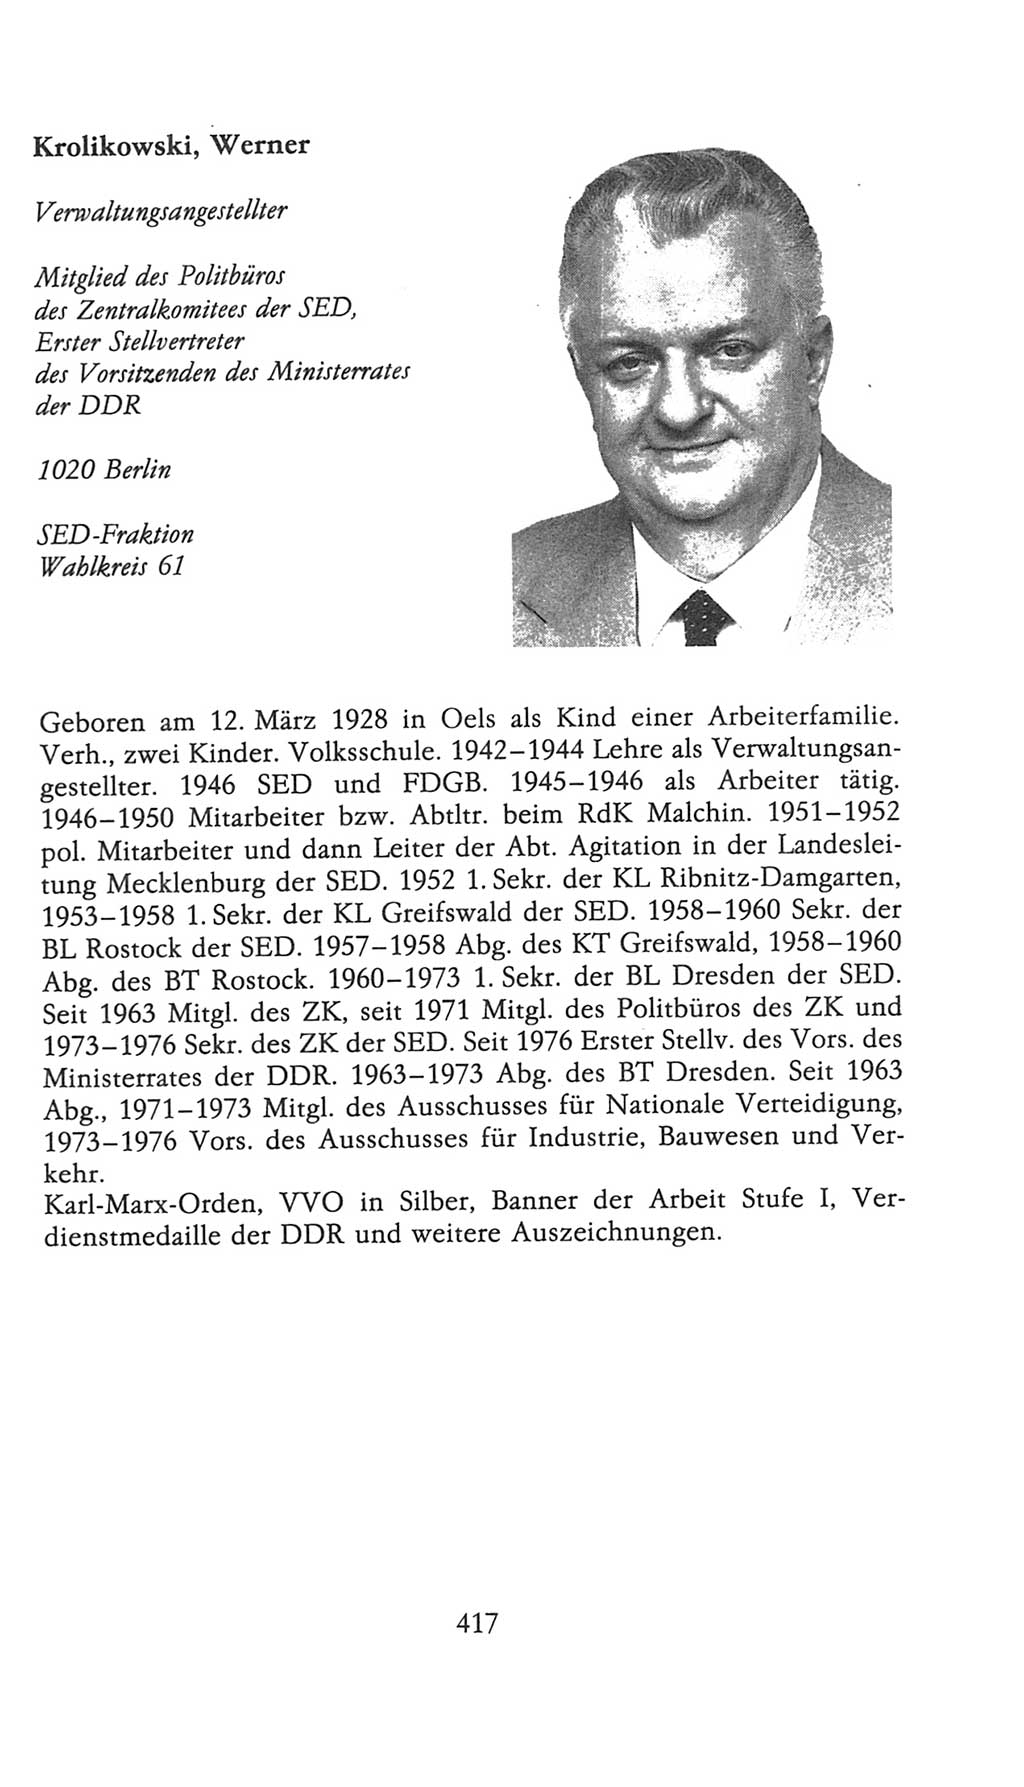 Volkskammer (VK) der Deutschen Demokratischen Republik (DDR), 9. Wahlperiode 1986-1990, Seite 417 (VK. DDR 9. WP. 1986-1990, S. 417)